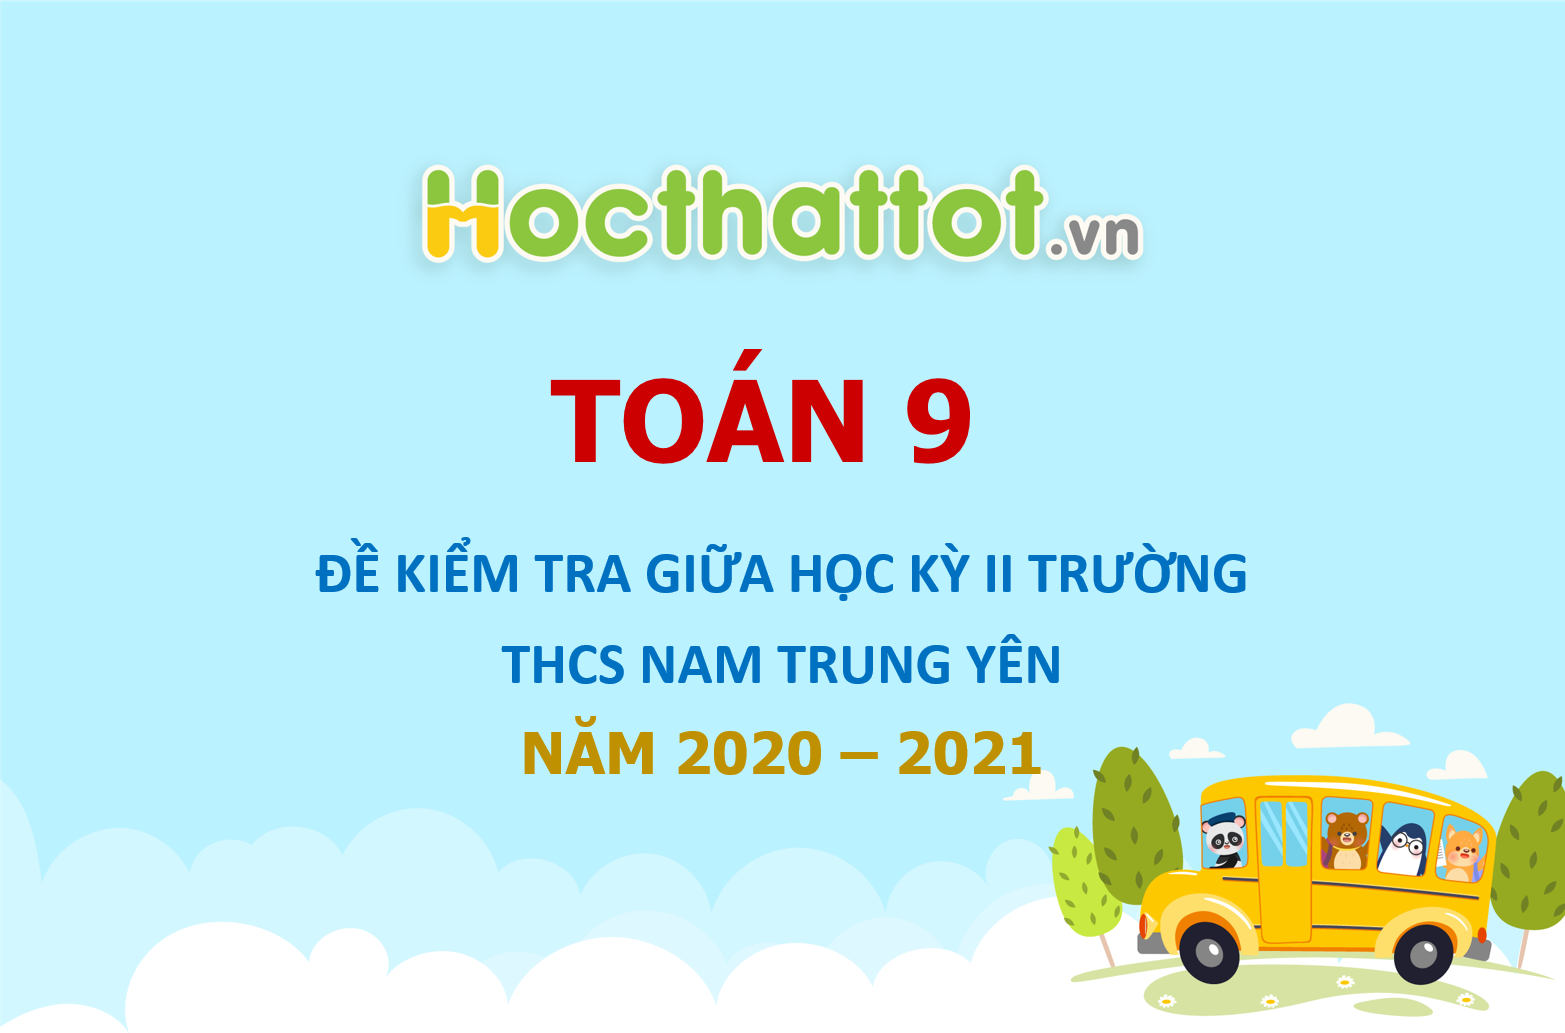 de-kiem-tra-giua-ki-2-toan-9-nam-2020-2021-truong-nam-trung-yen-ha-noi